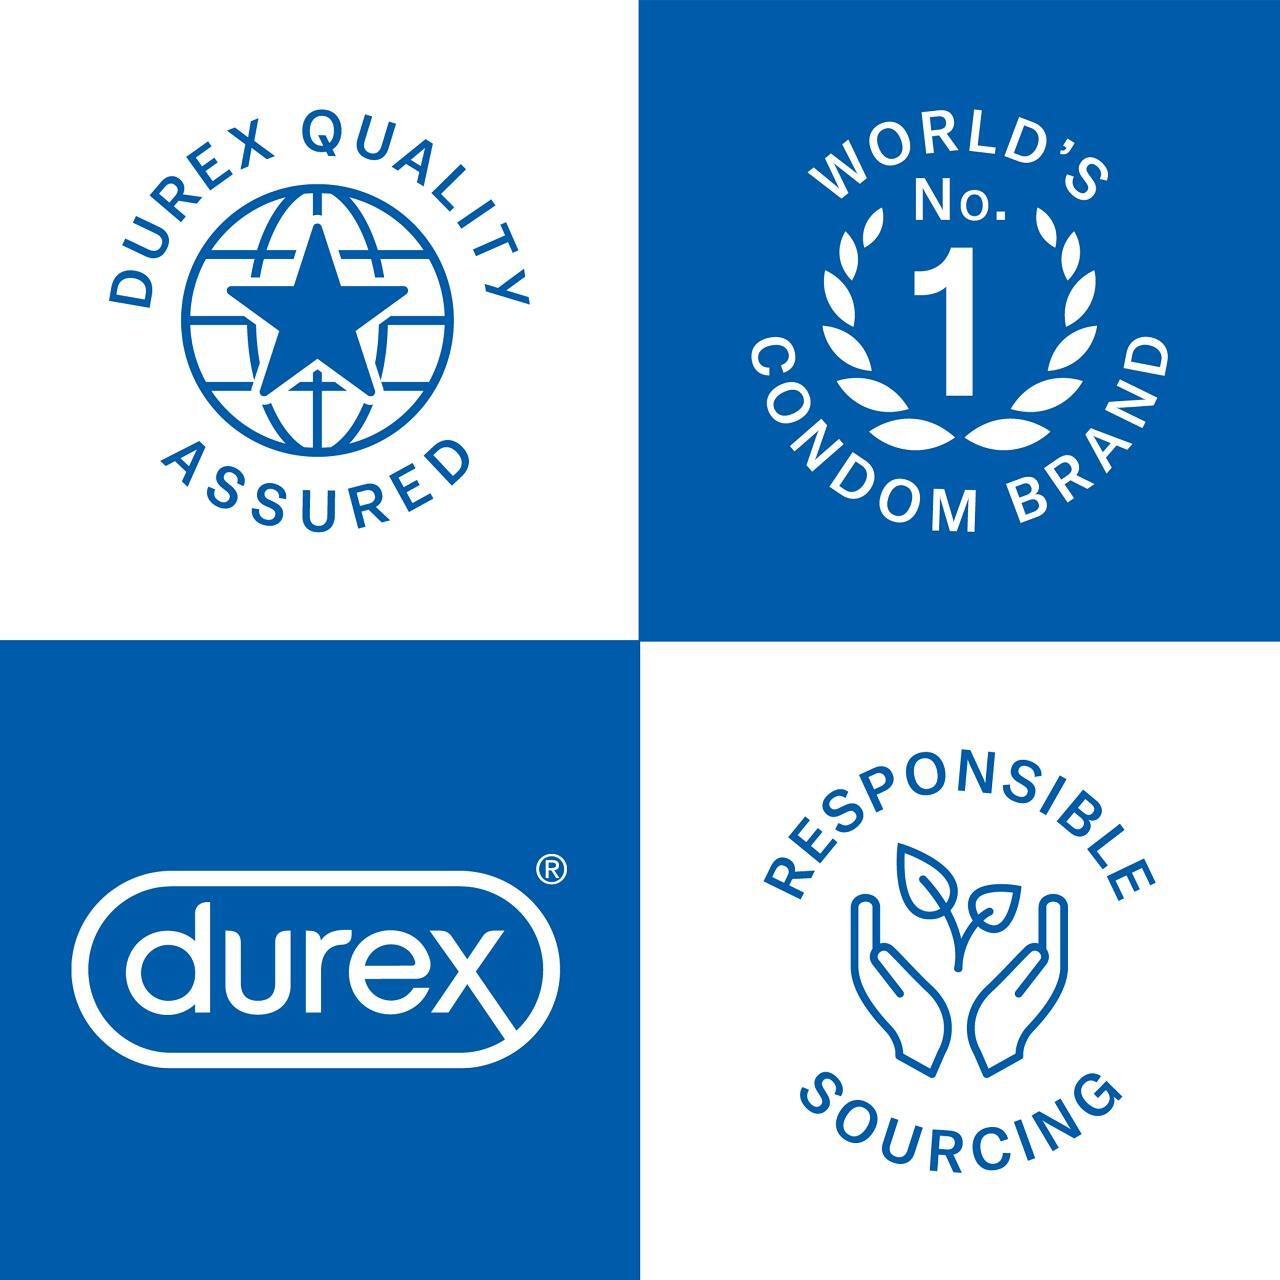 Durex Extra Safe Thick 12 Condoms 12 per pack